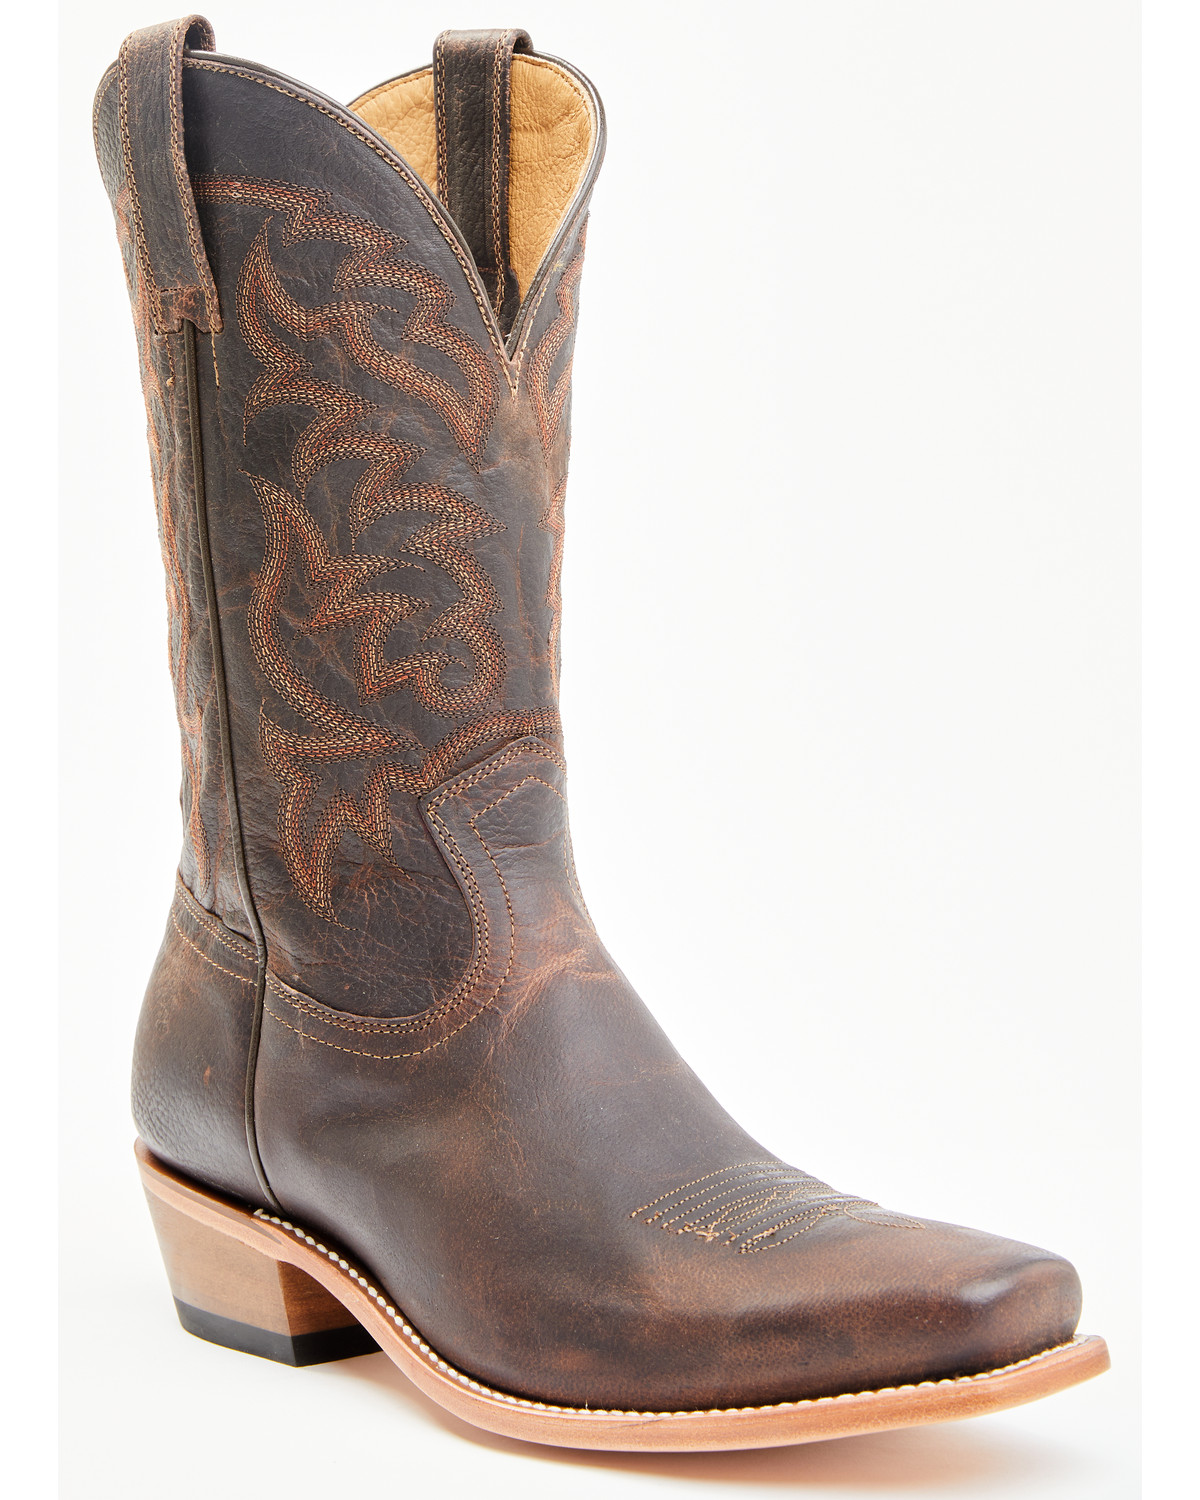 Men's Vintage Cowboy Boots